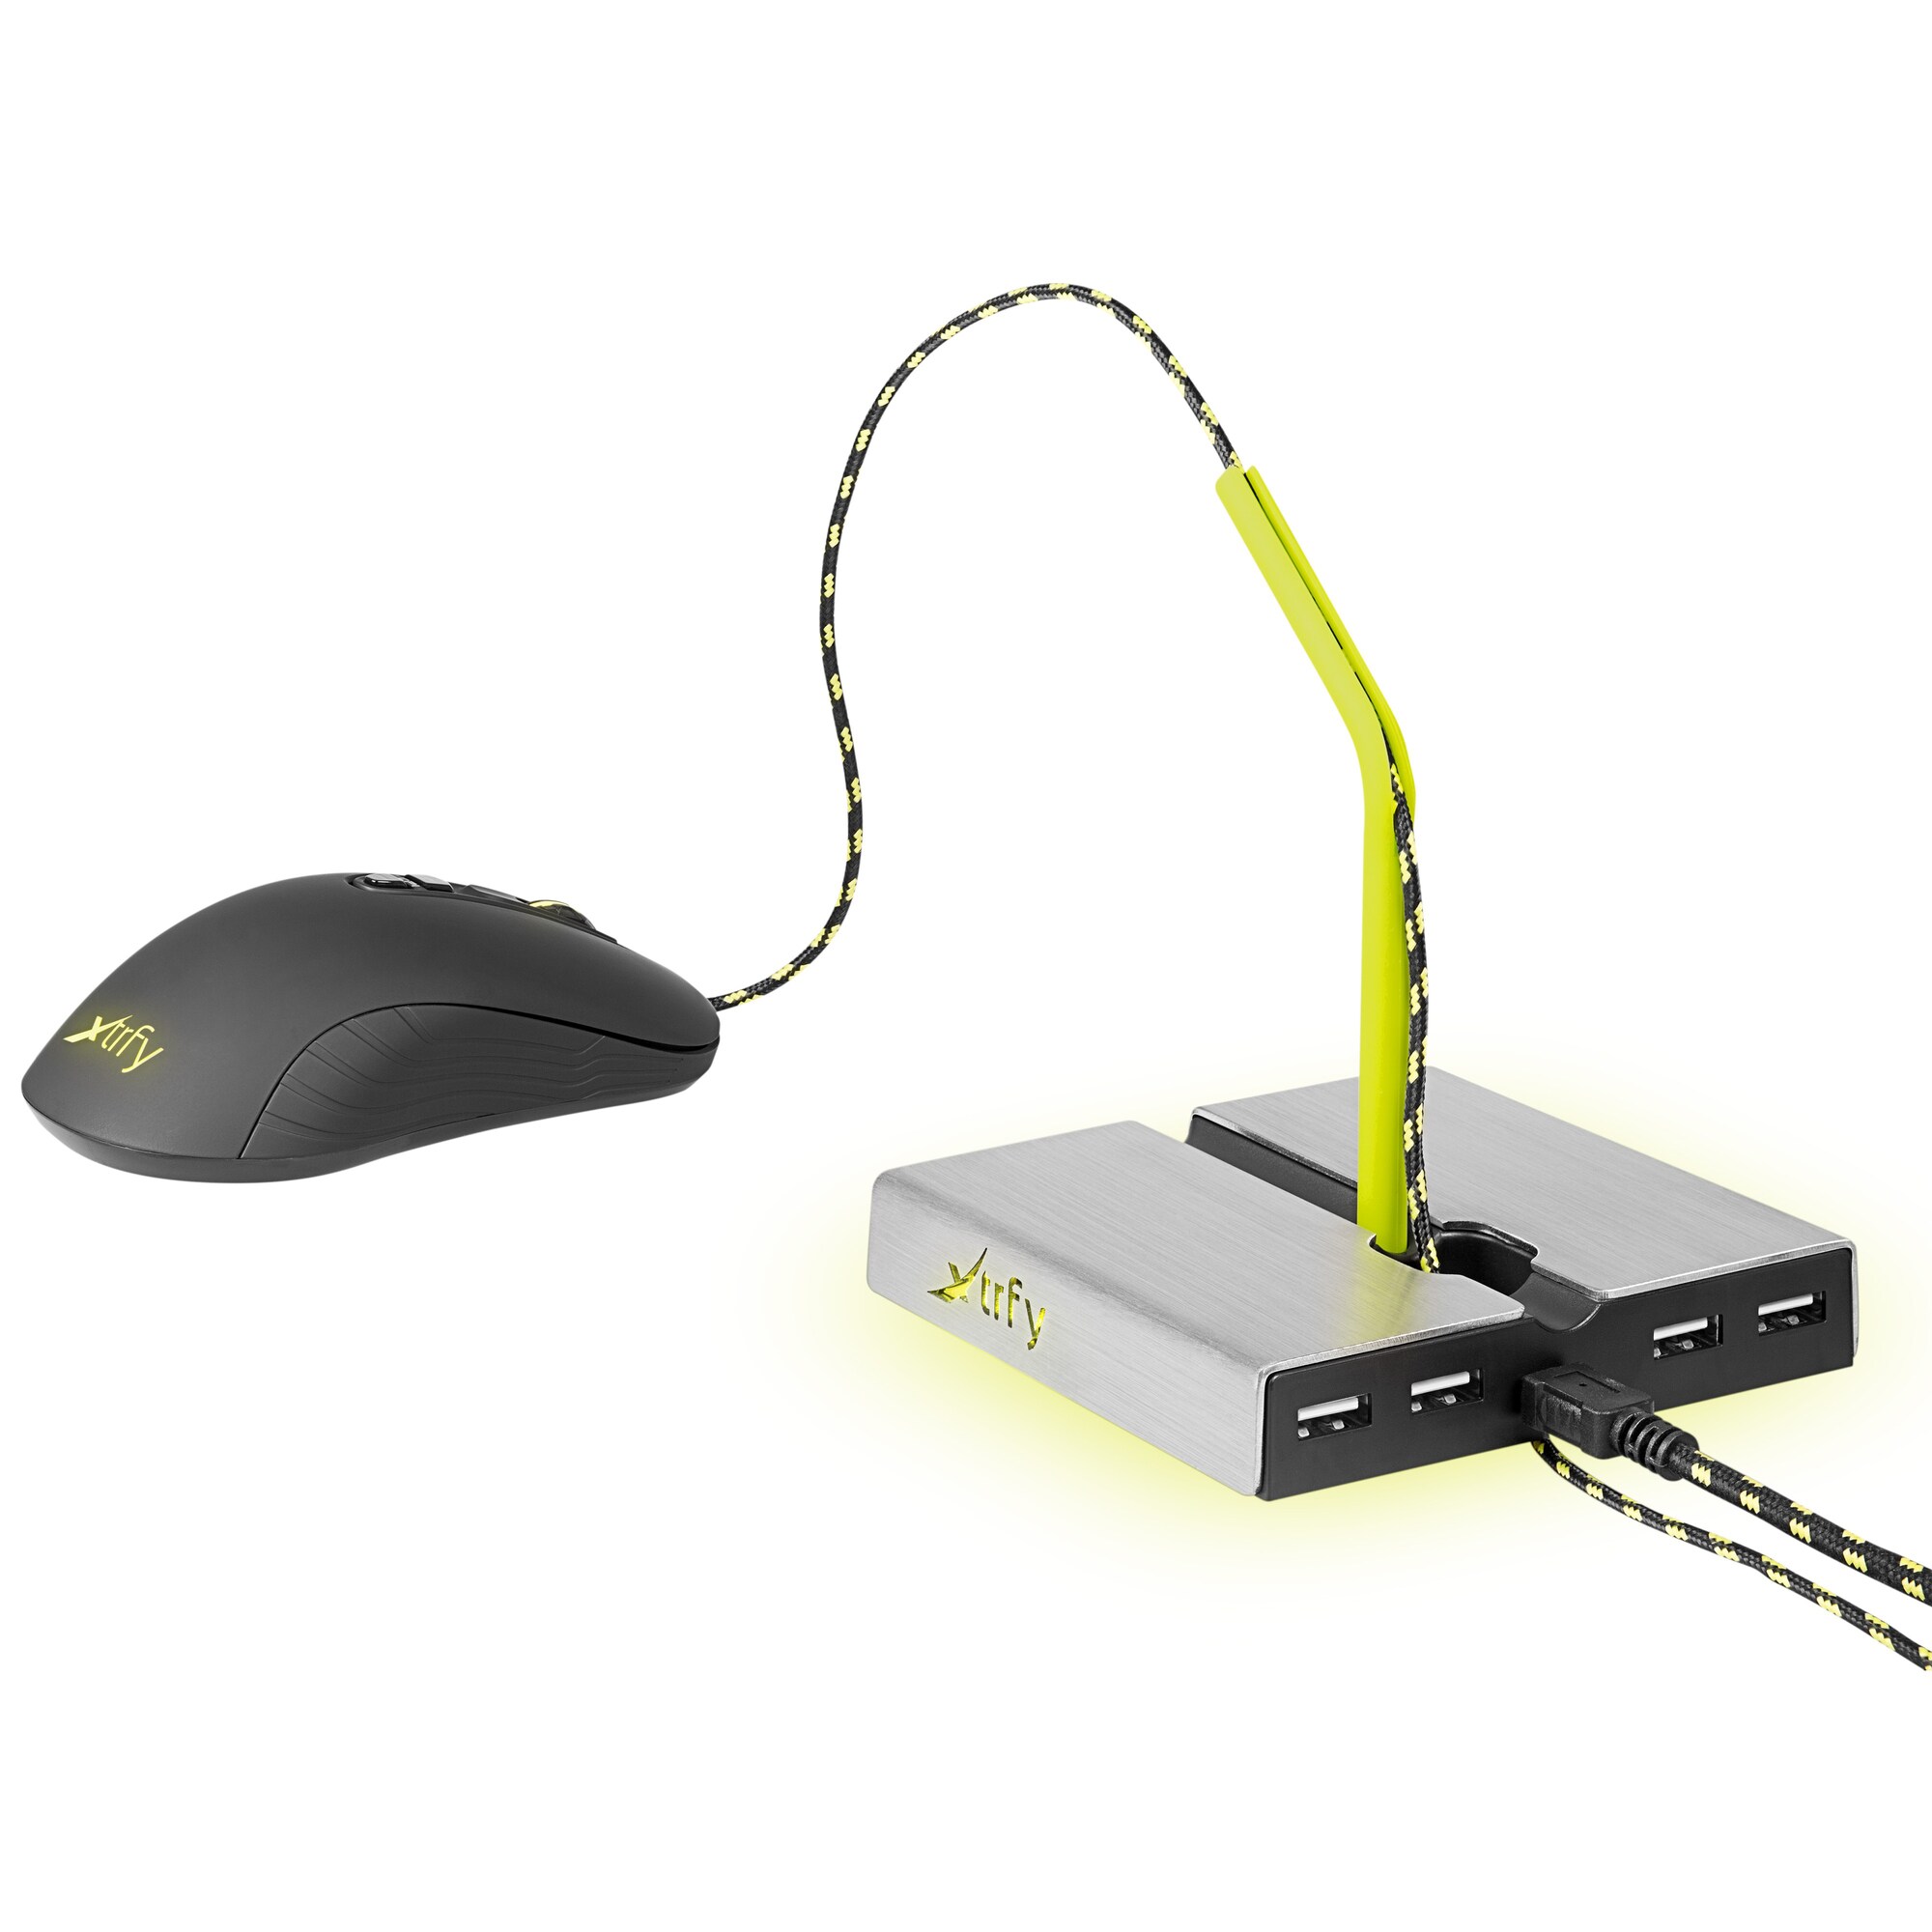 Xtrfy B1 sladdhållare för mus med LED och USB hubb - Gadgets och ...